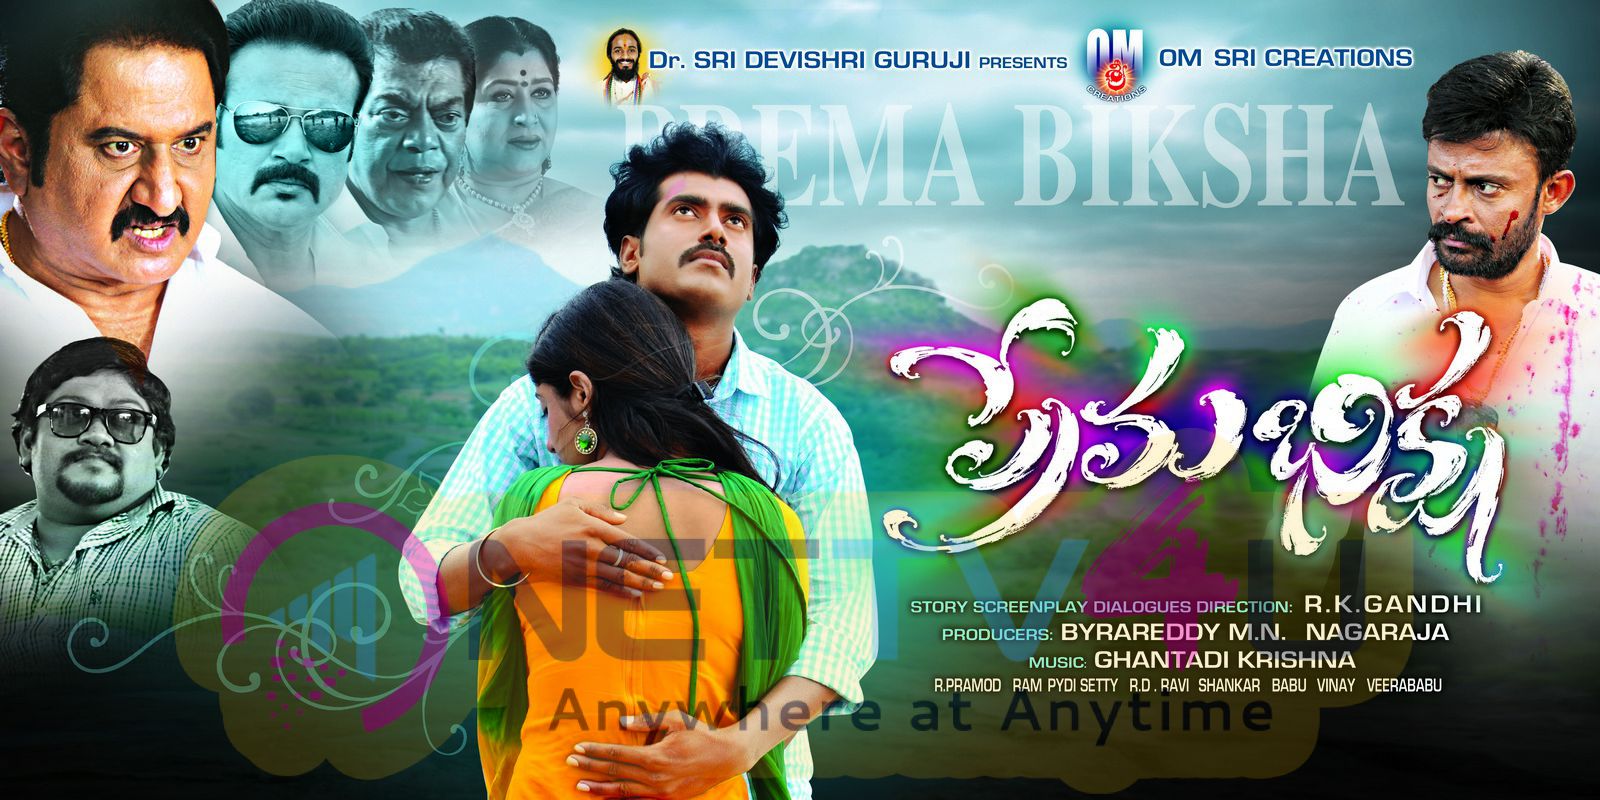 Prema Bhiksha Telugu Movie Attractive Stills & Posters Telugu Gallery